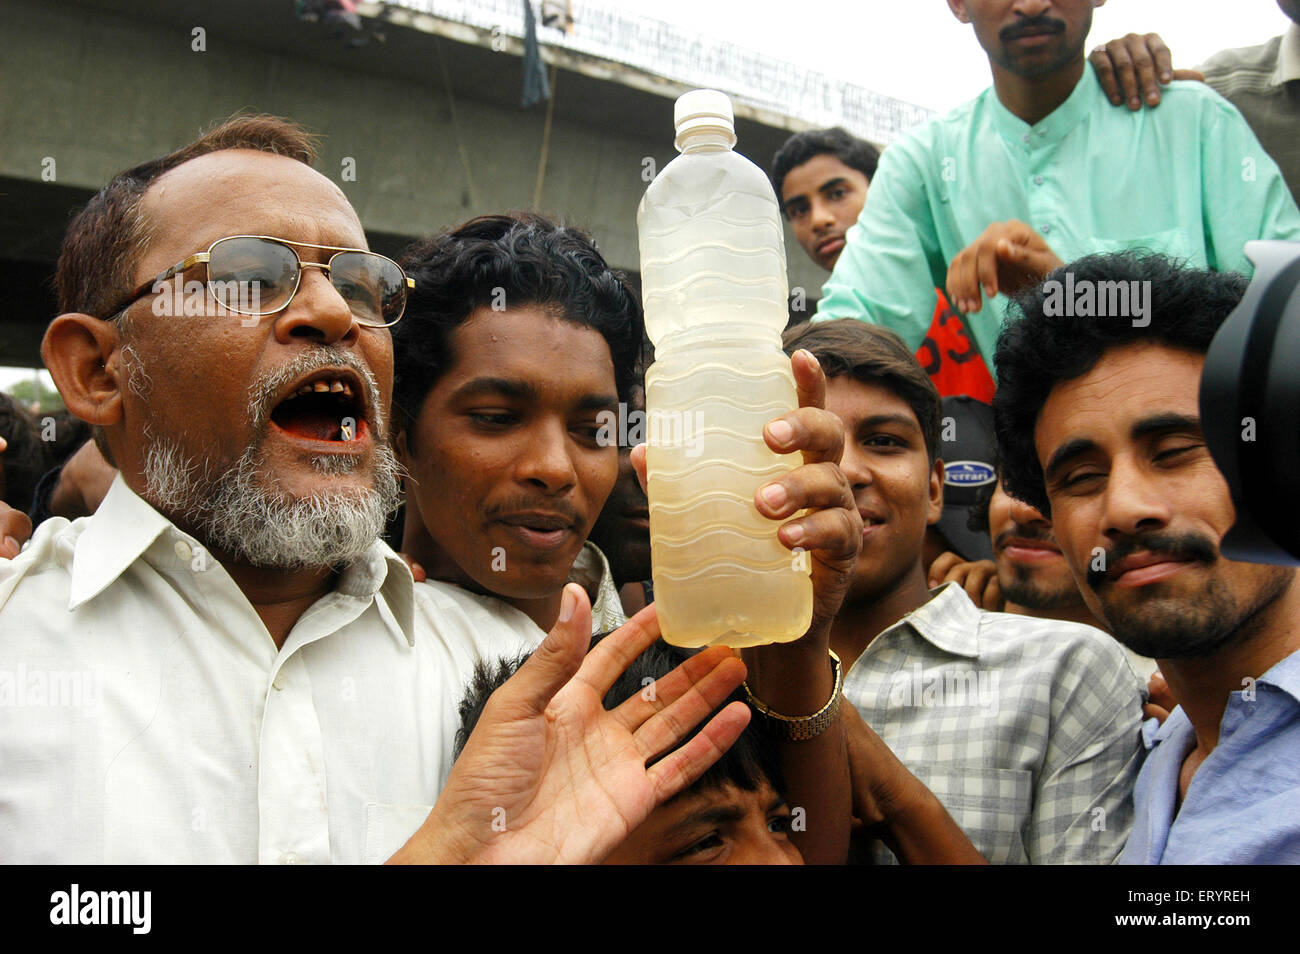 Les gens qui montrent une bouteille d'eau sale sale sale sale et protestent, Bombay, Mumbai, Maharashtra, Inde,Asie, Asie, Indien Banque D'Images